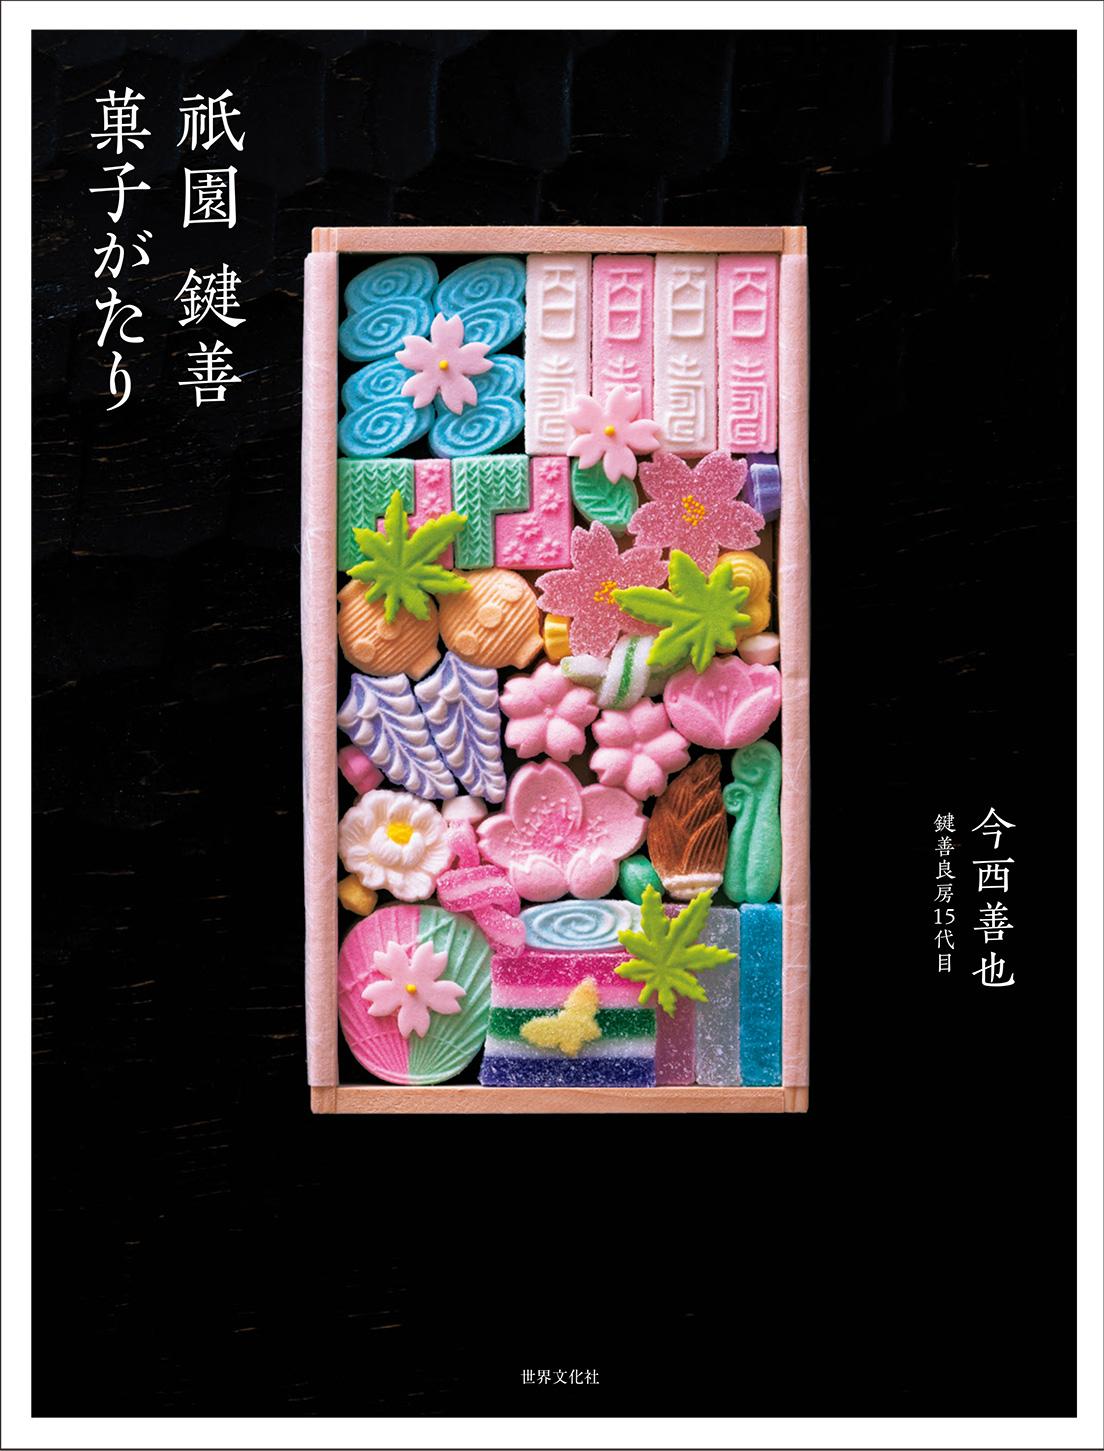 〈鍵善良房〉の多彩な魅力を収めた『祇園 鍵善 菓子がたり』は現在発売中。3,850円。